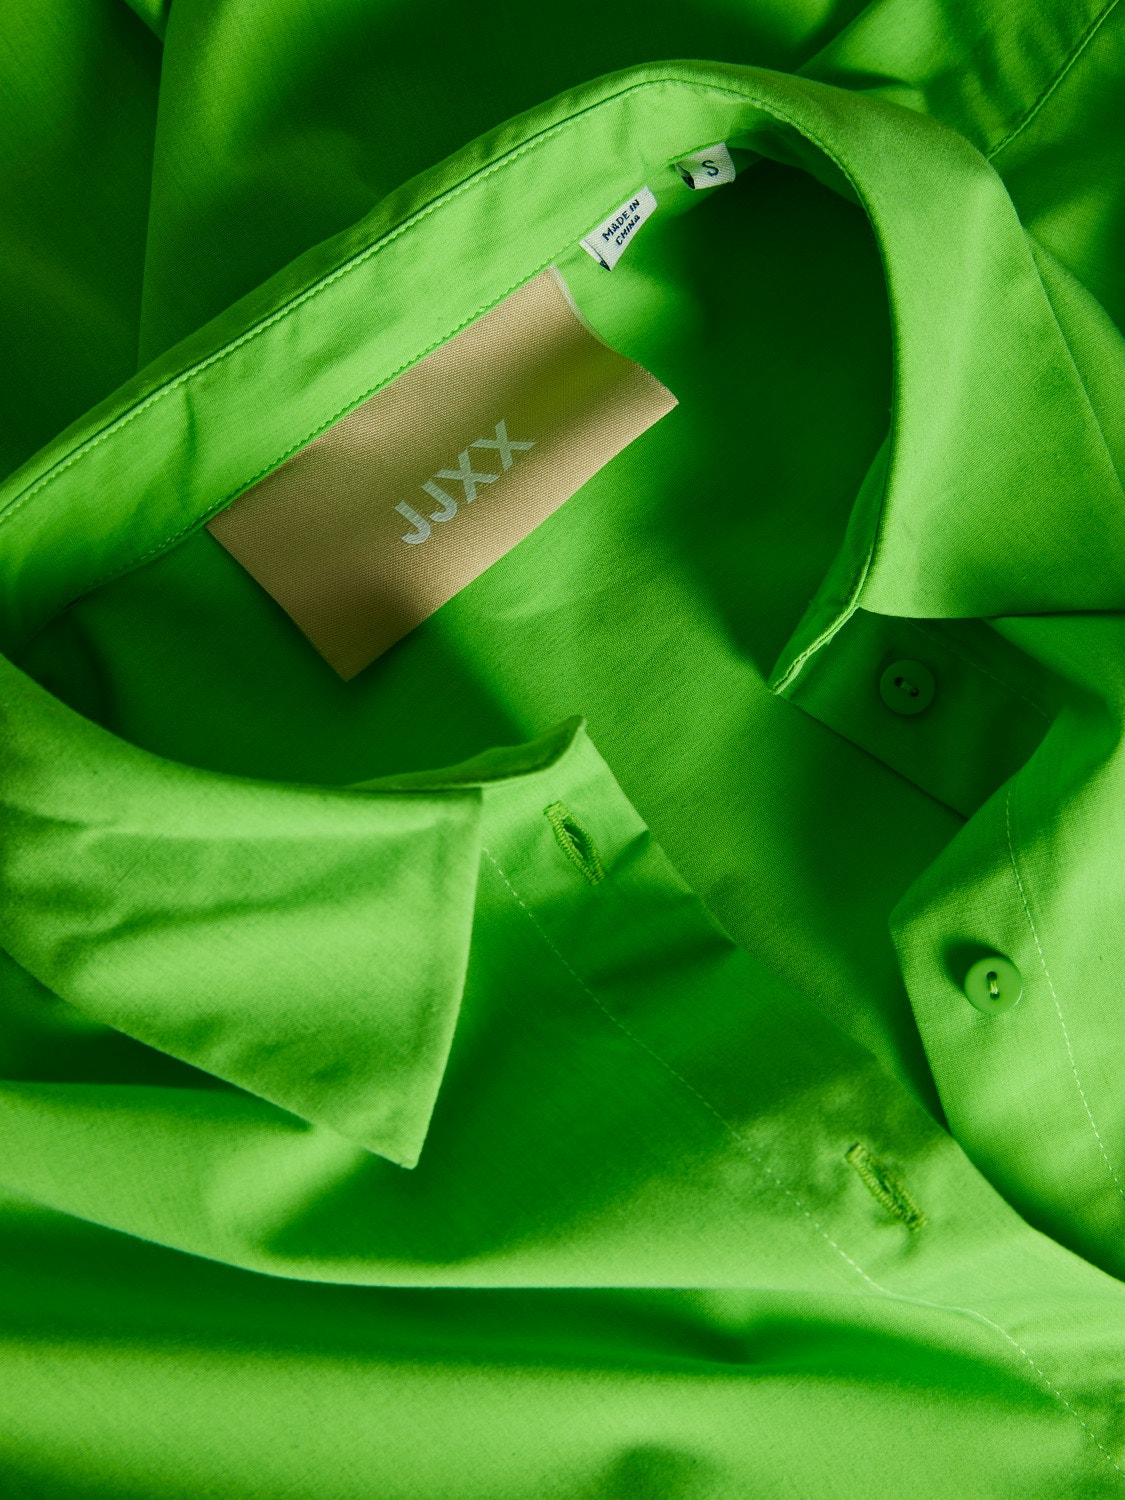 JJXX JXMISSION Poplin shirt -Green Flash - 12203891